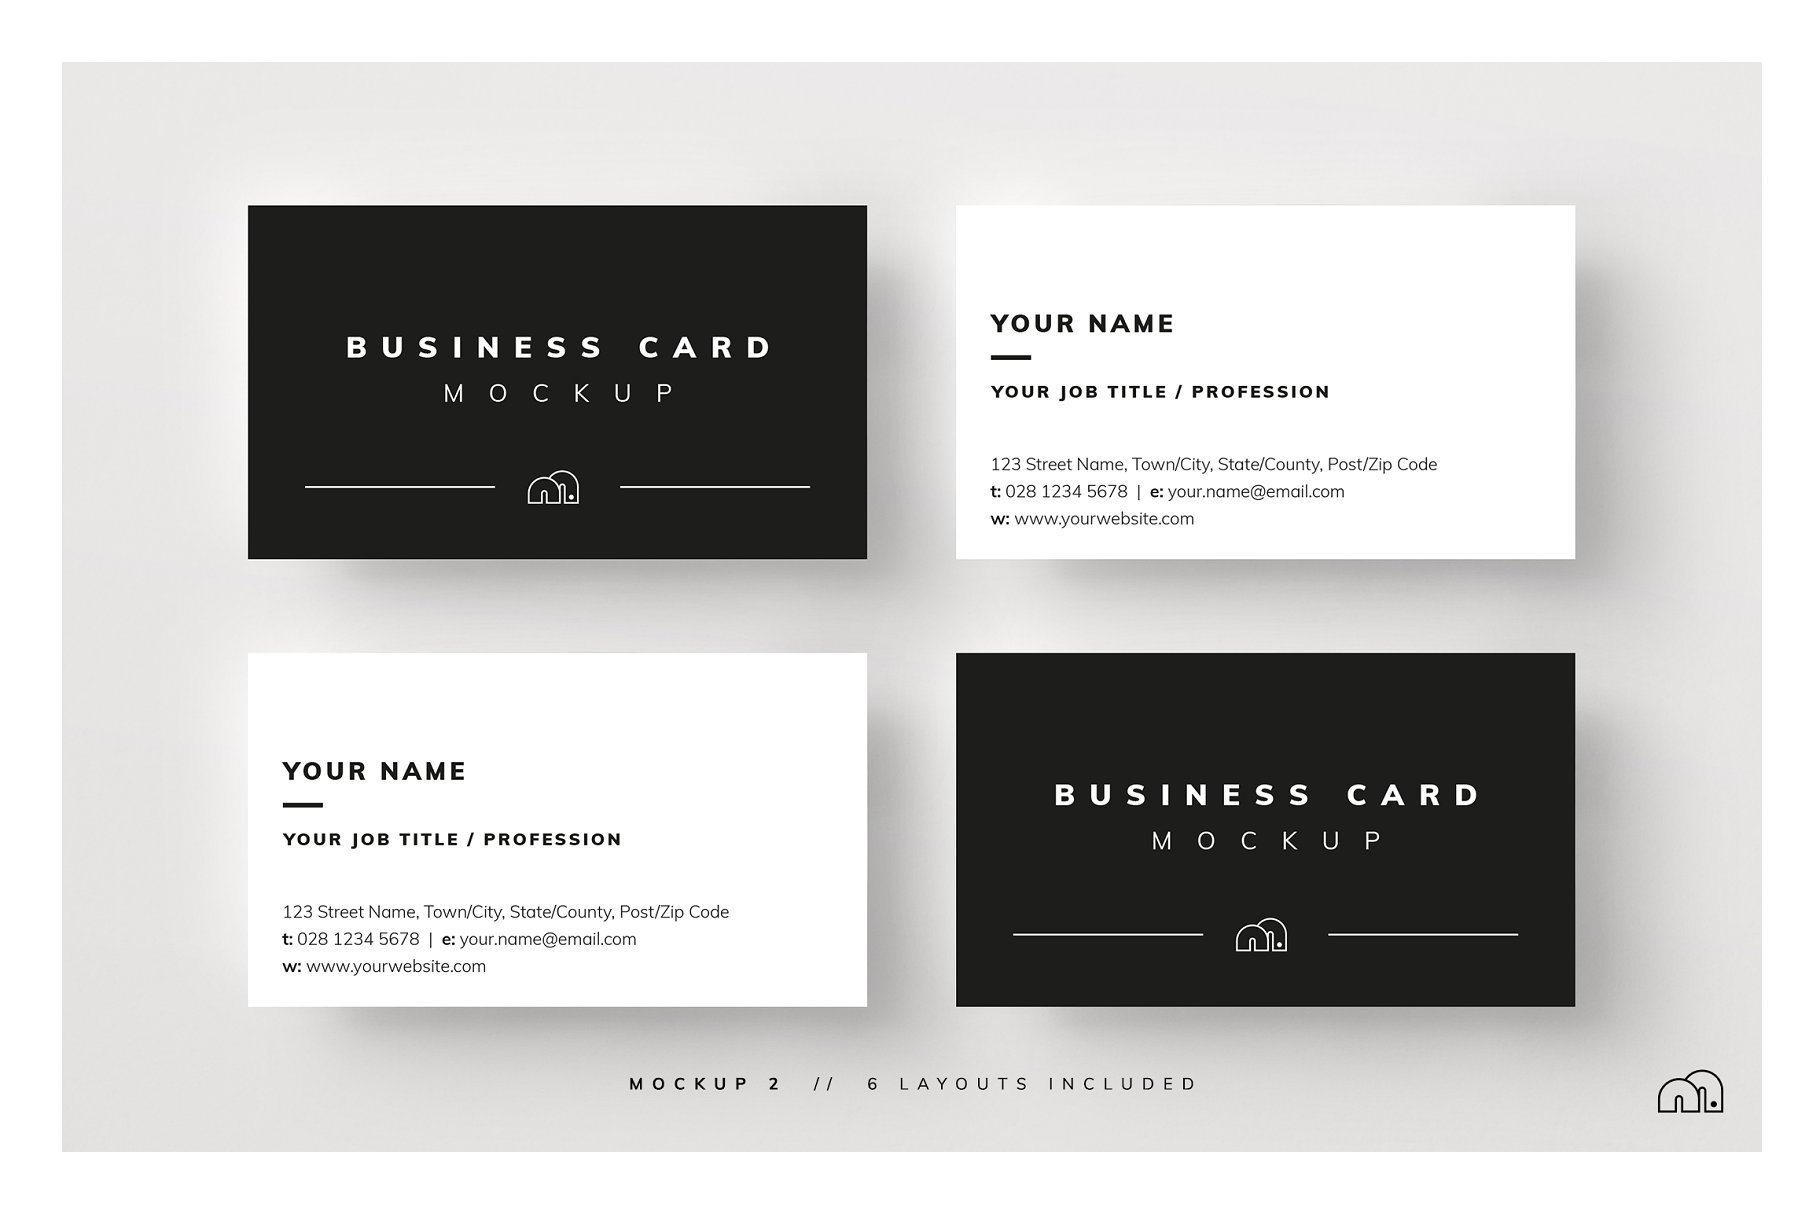 多角度多样式名片样机模板 Business Card Mockup插图3